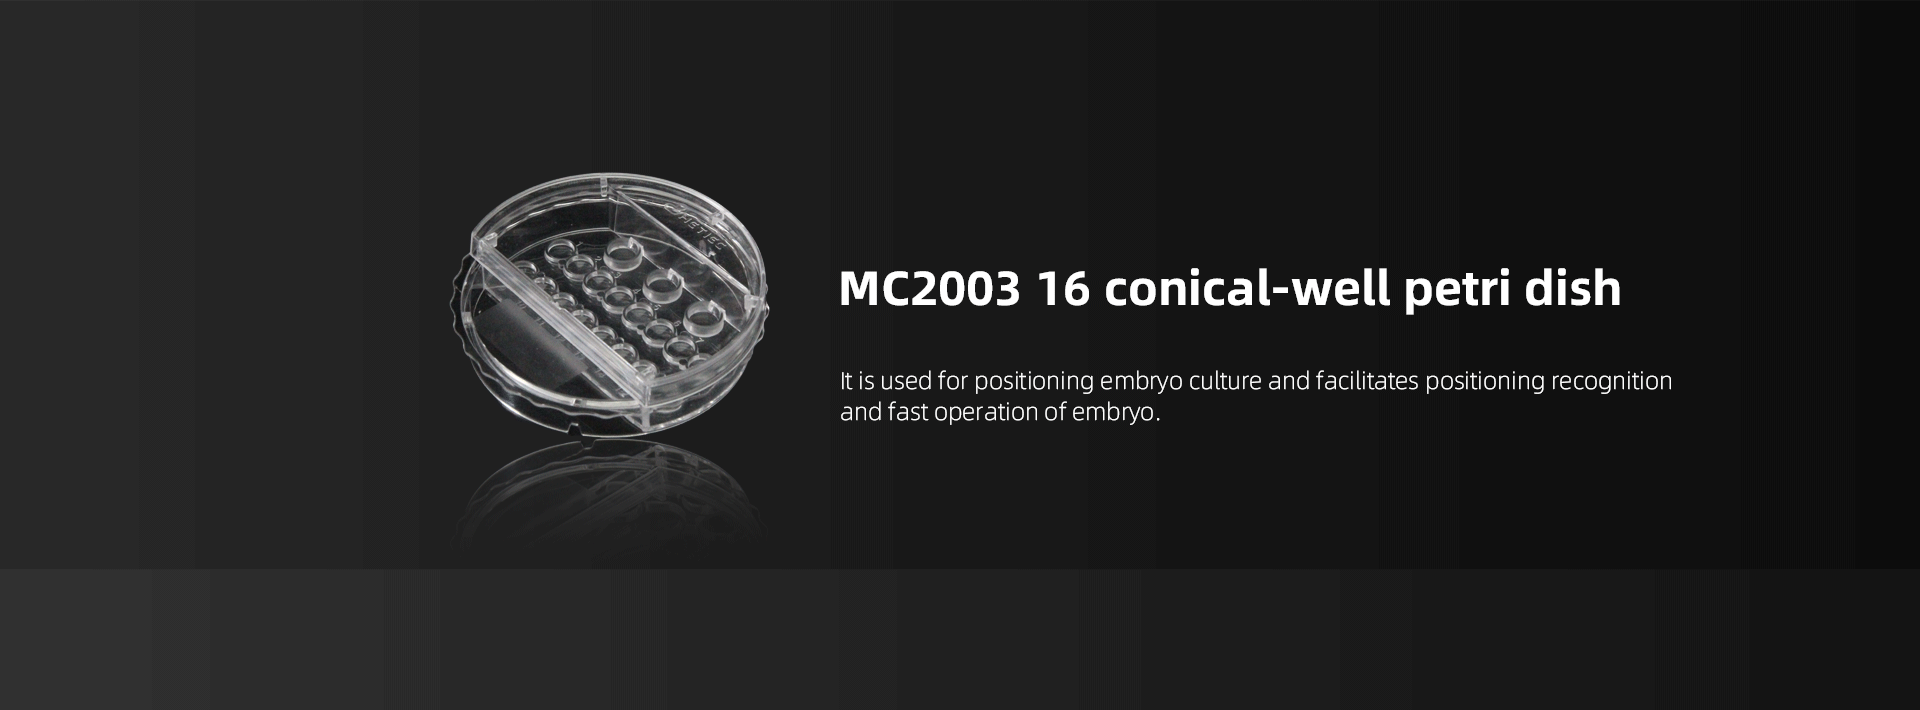 MC2003